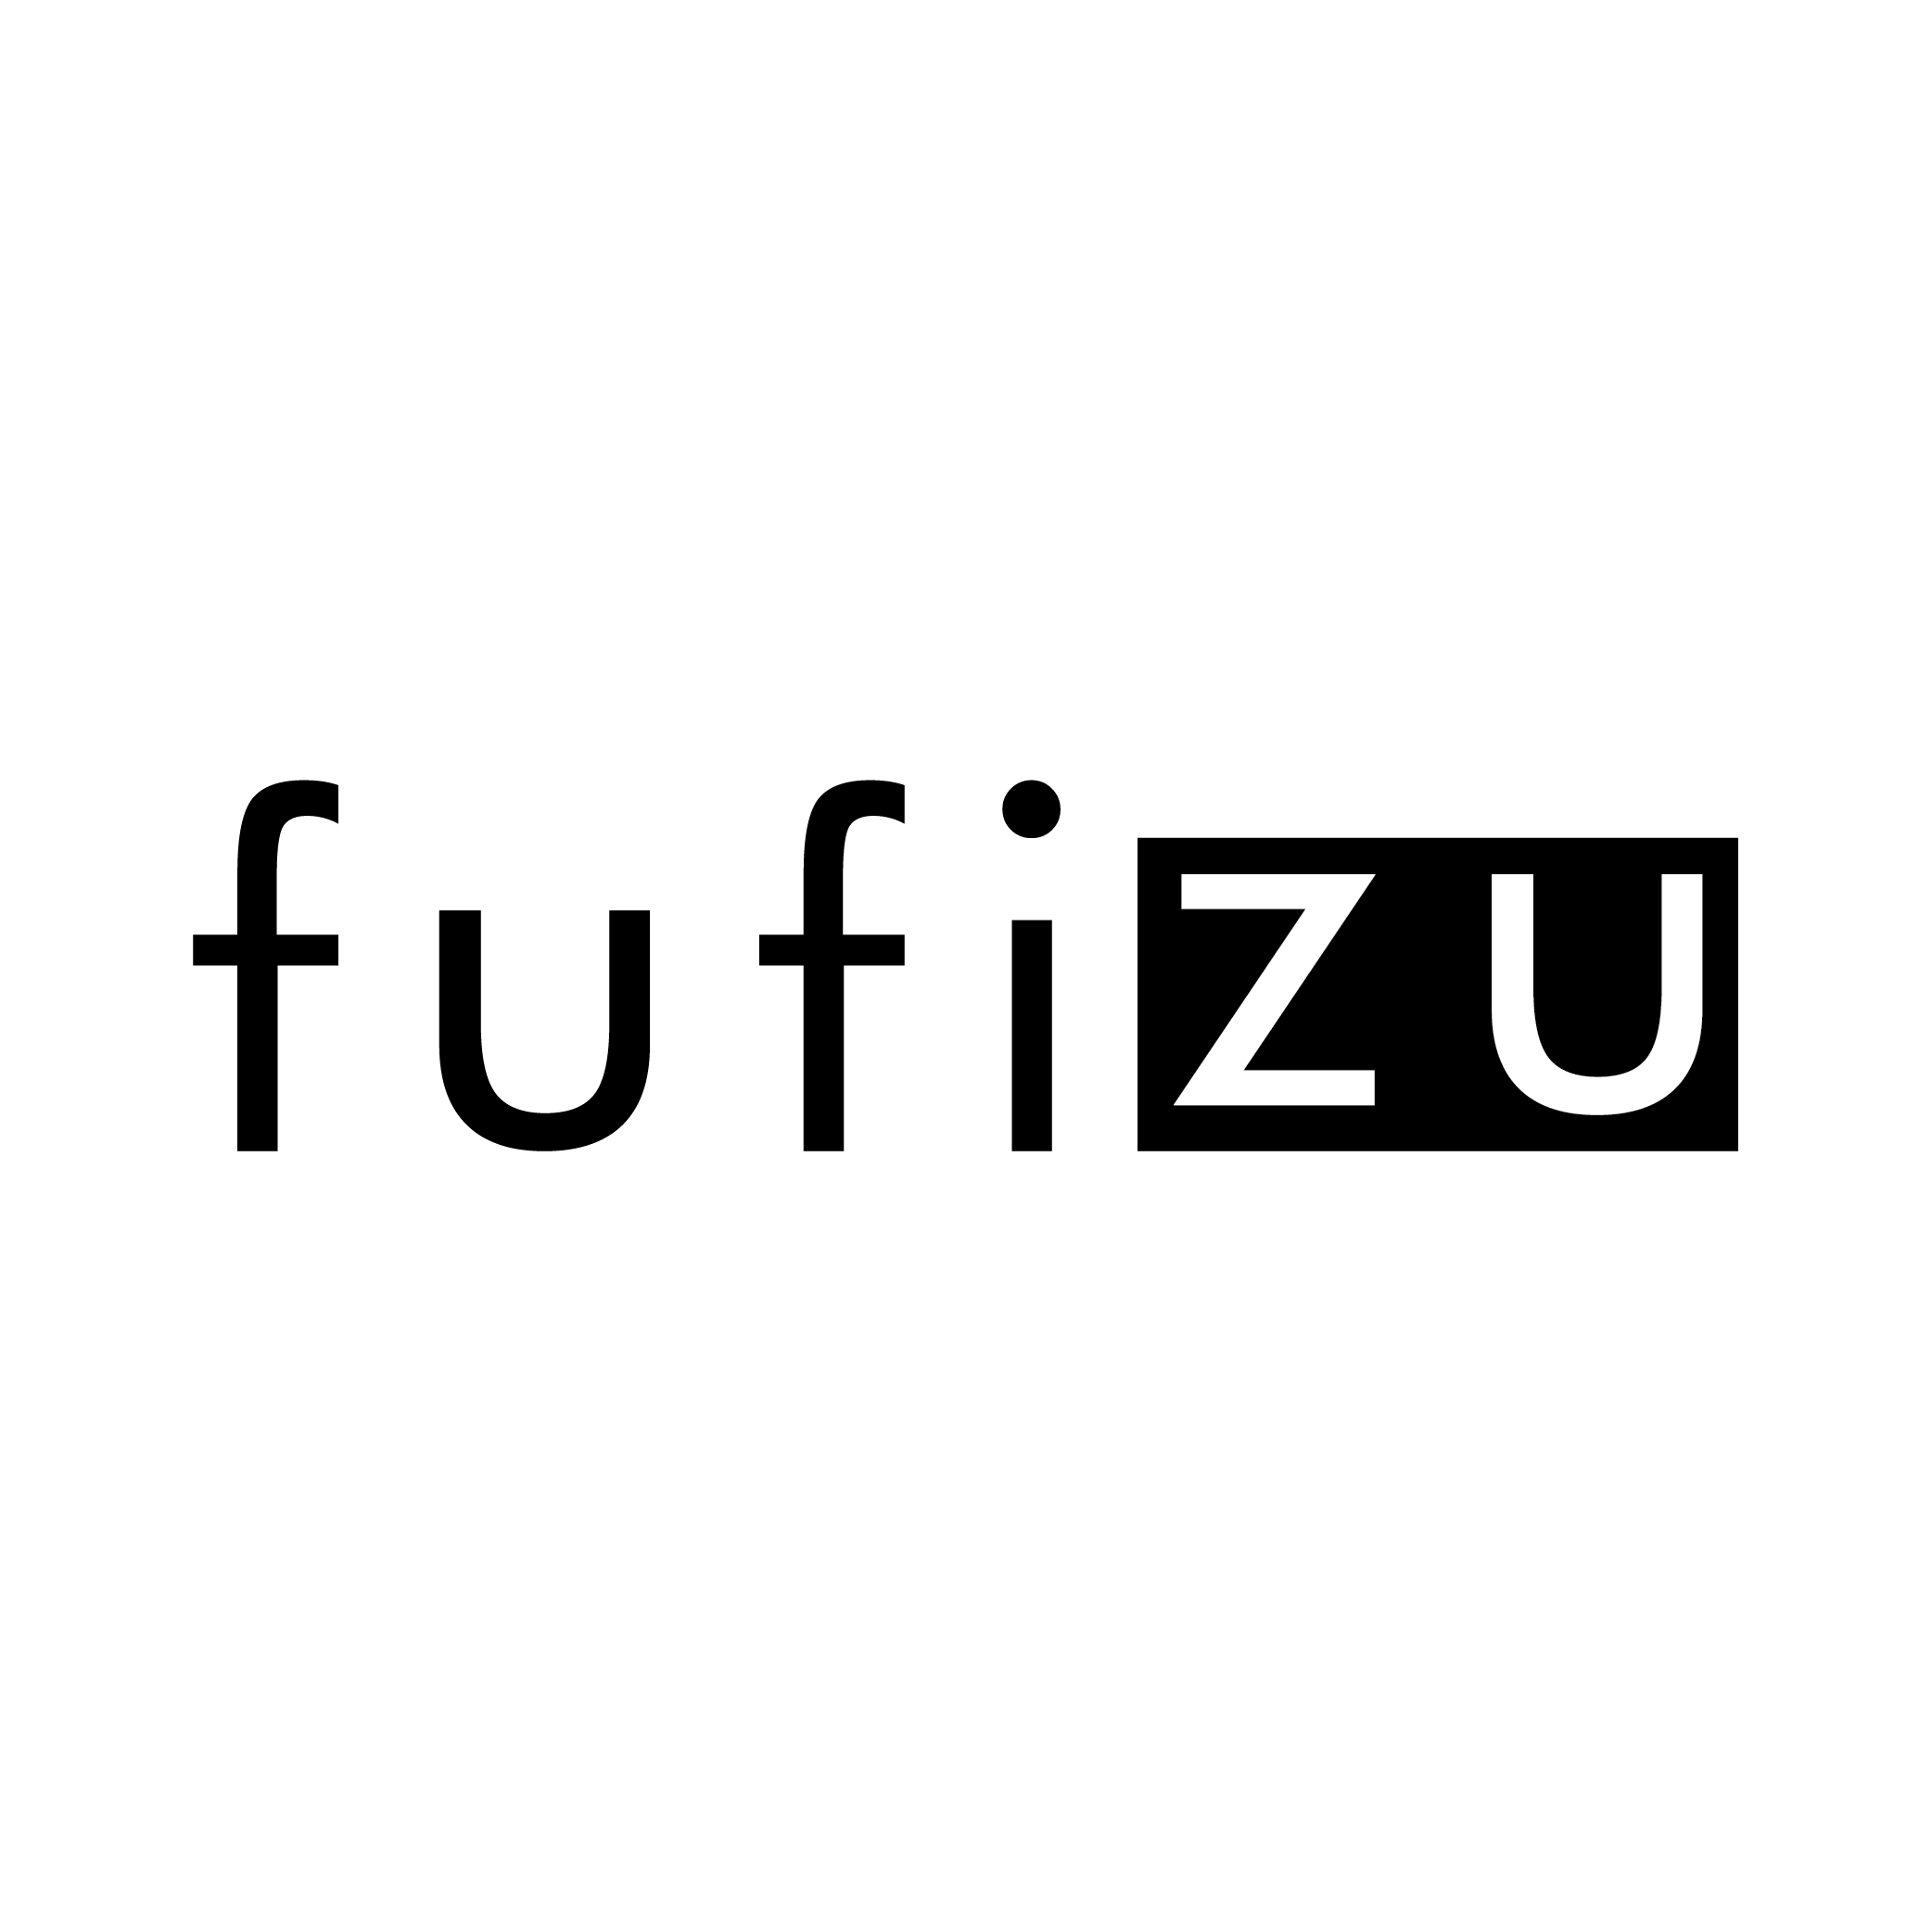 Fufizu